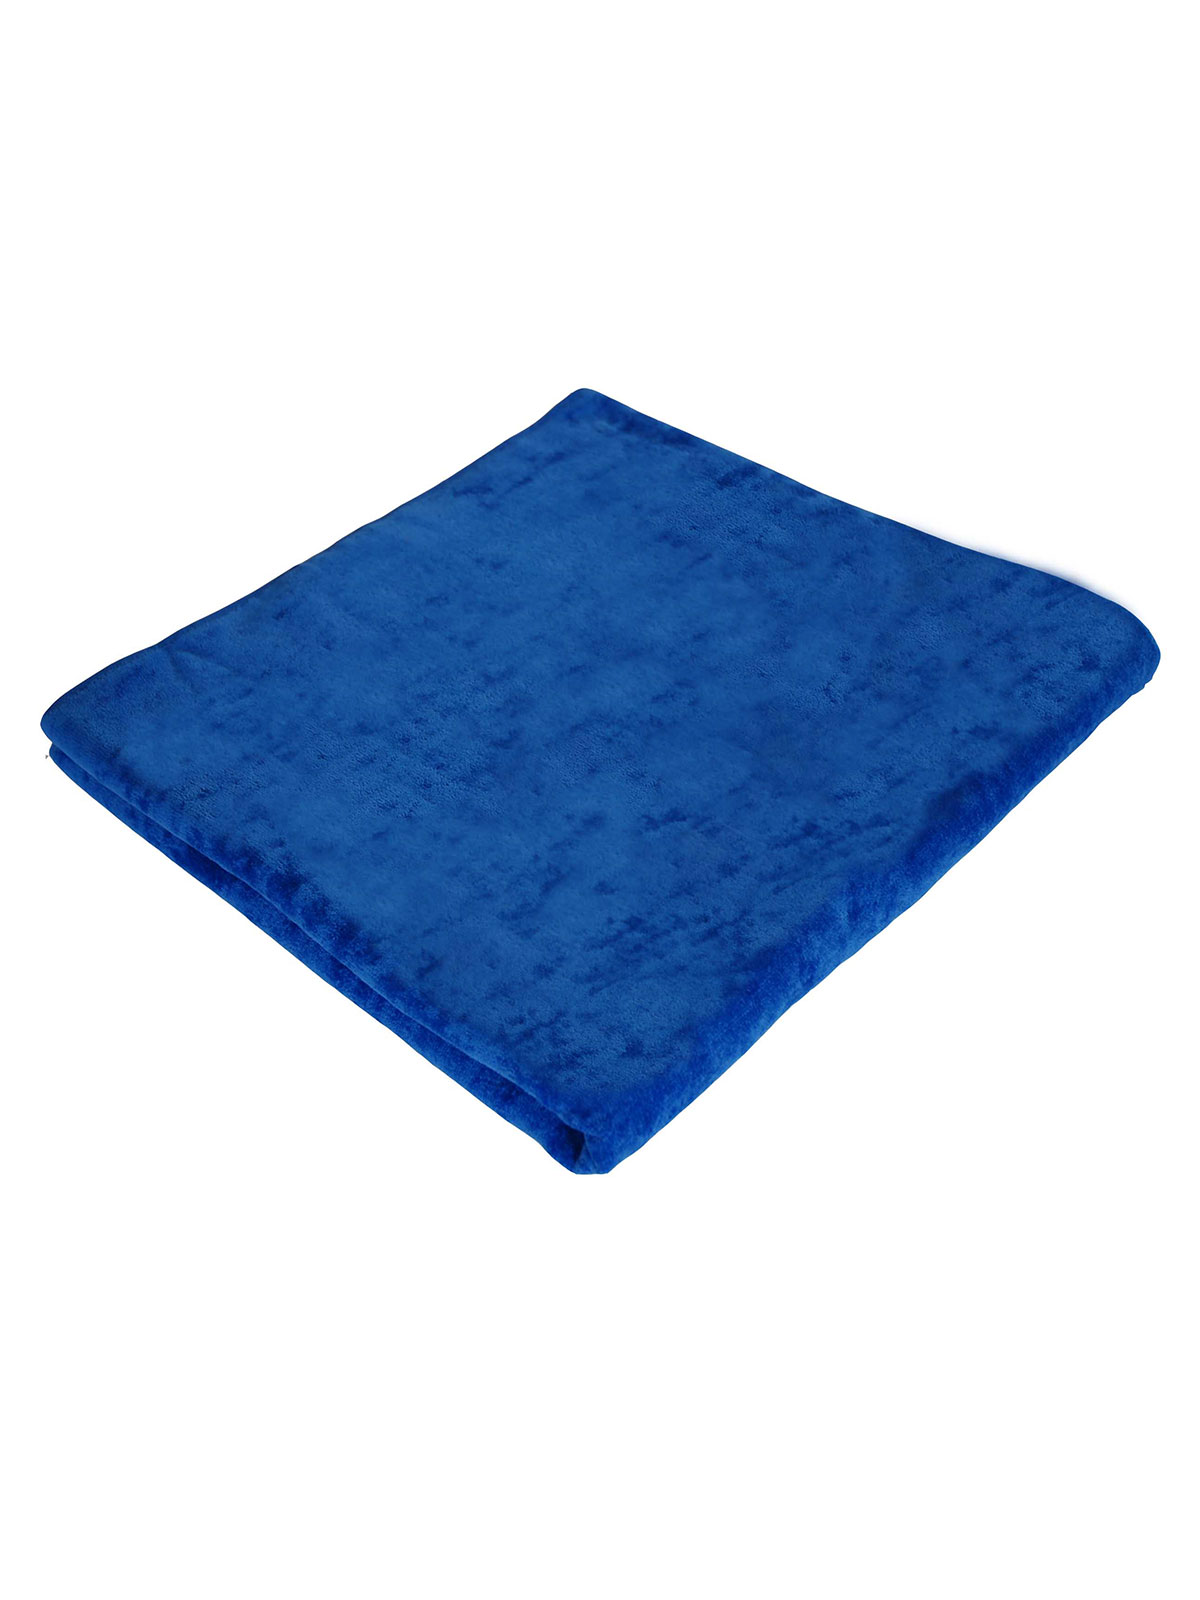 velour-towel-90x180-royal-blue.webp